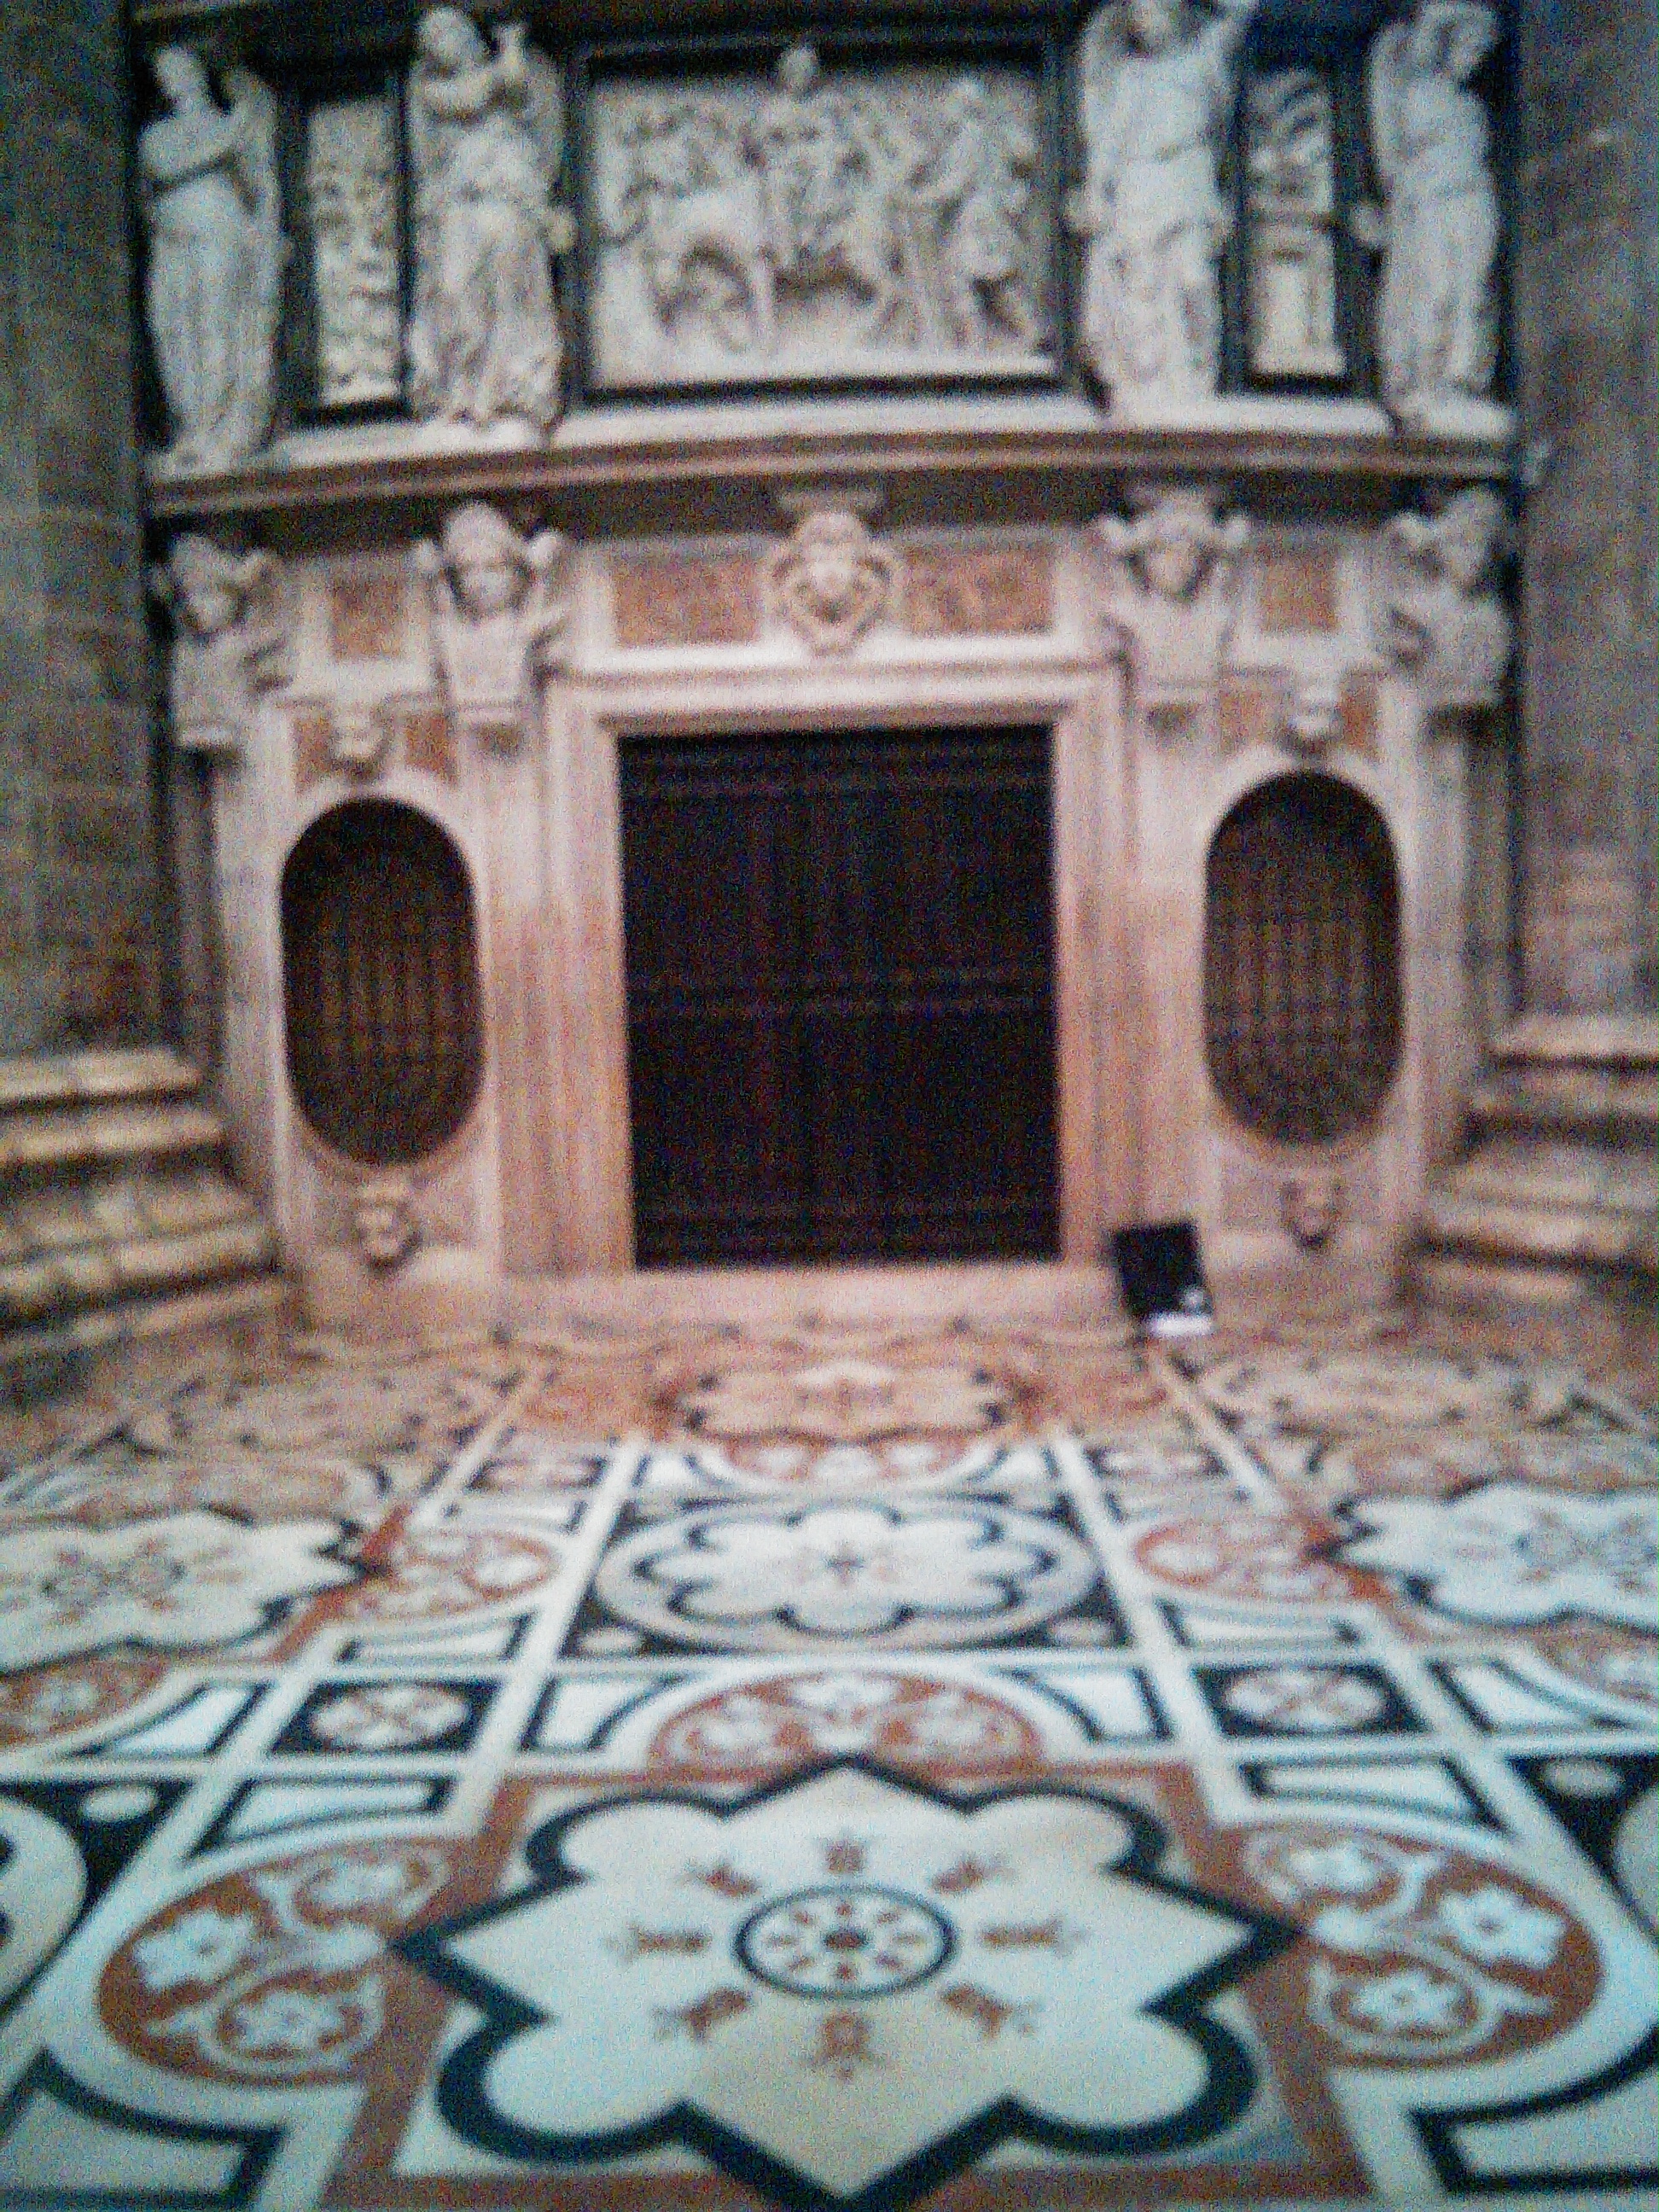 Duomo mosiac floor